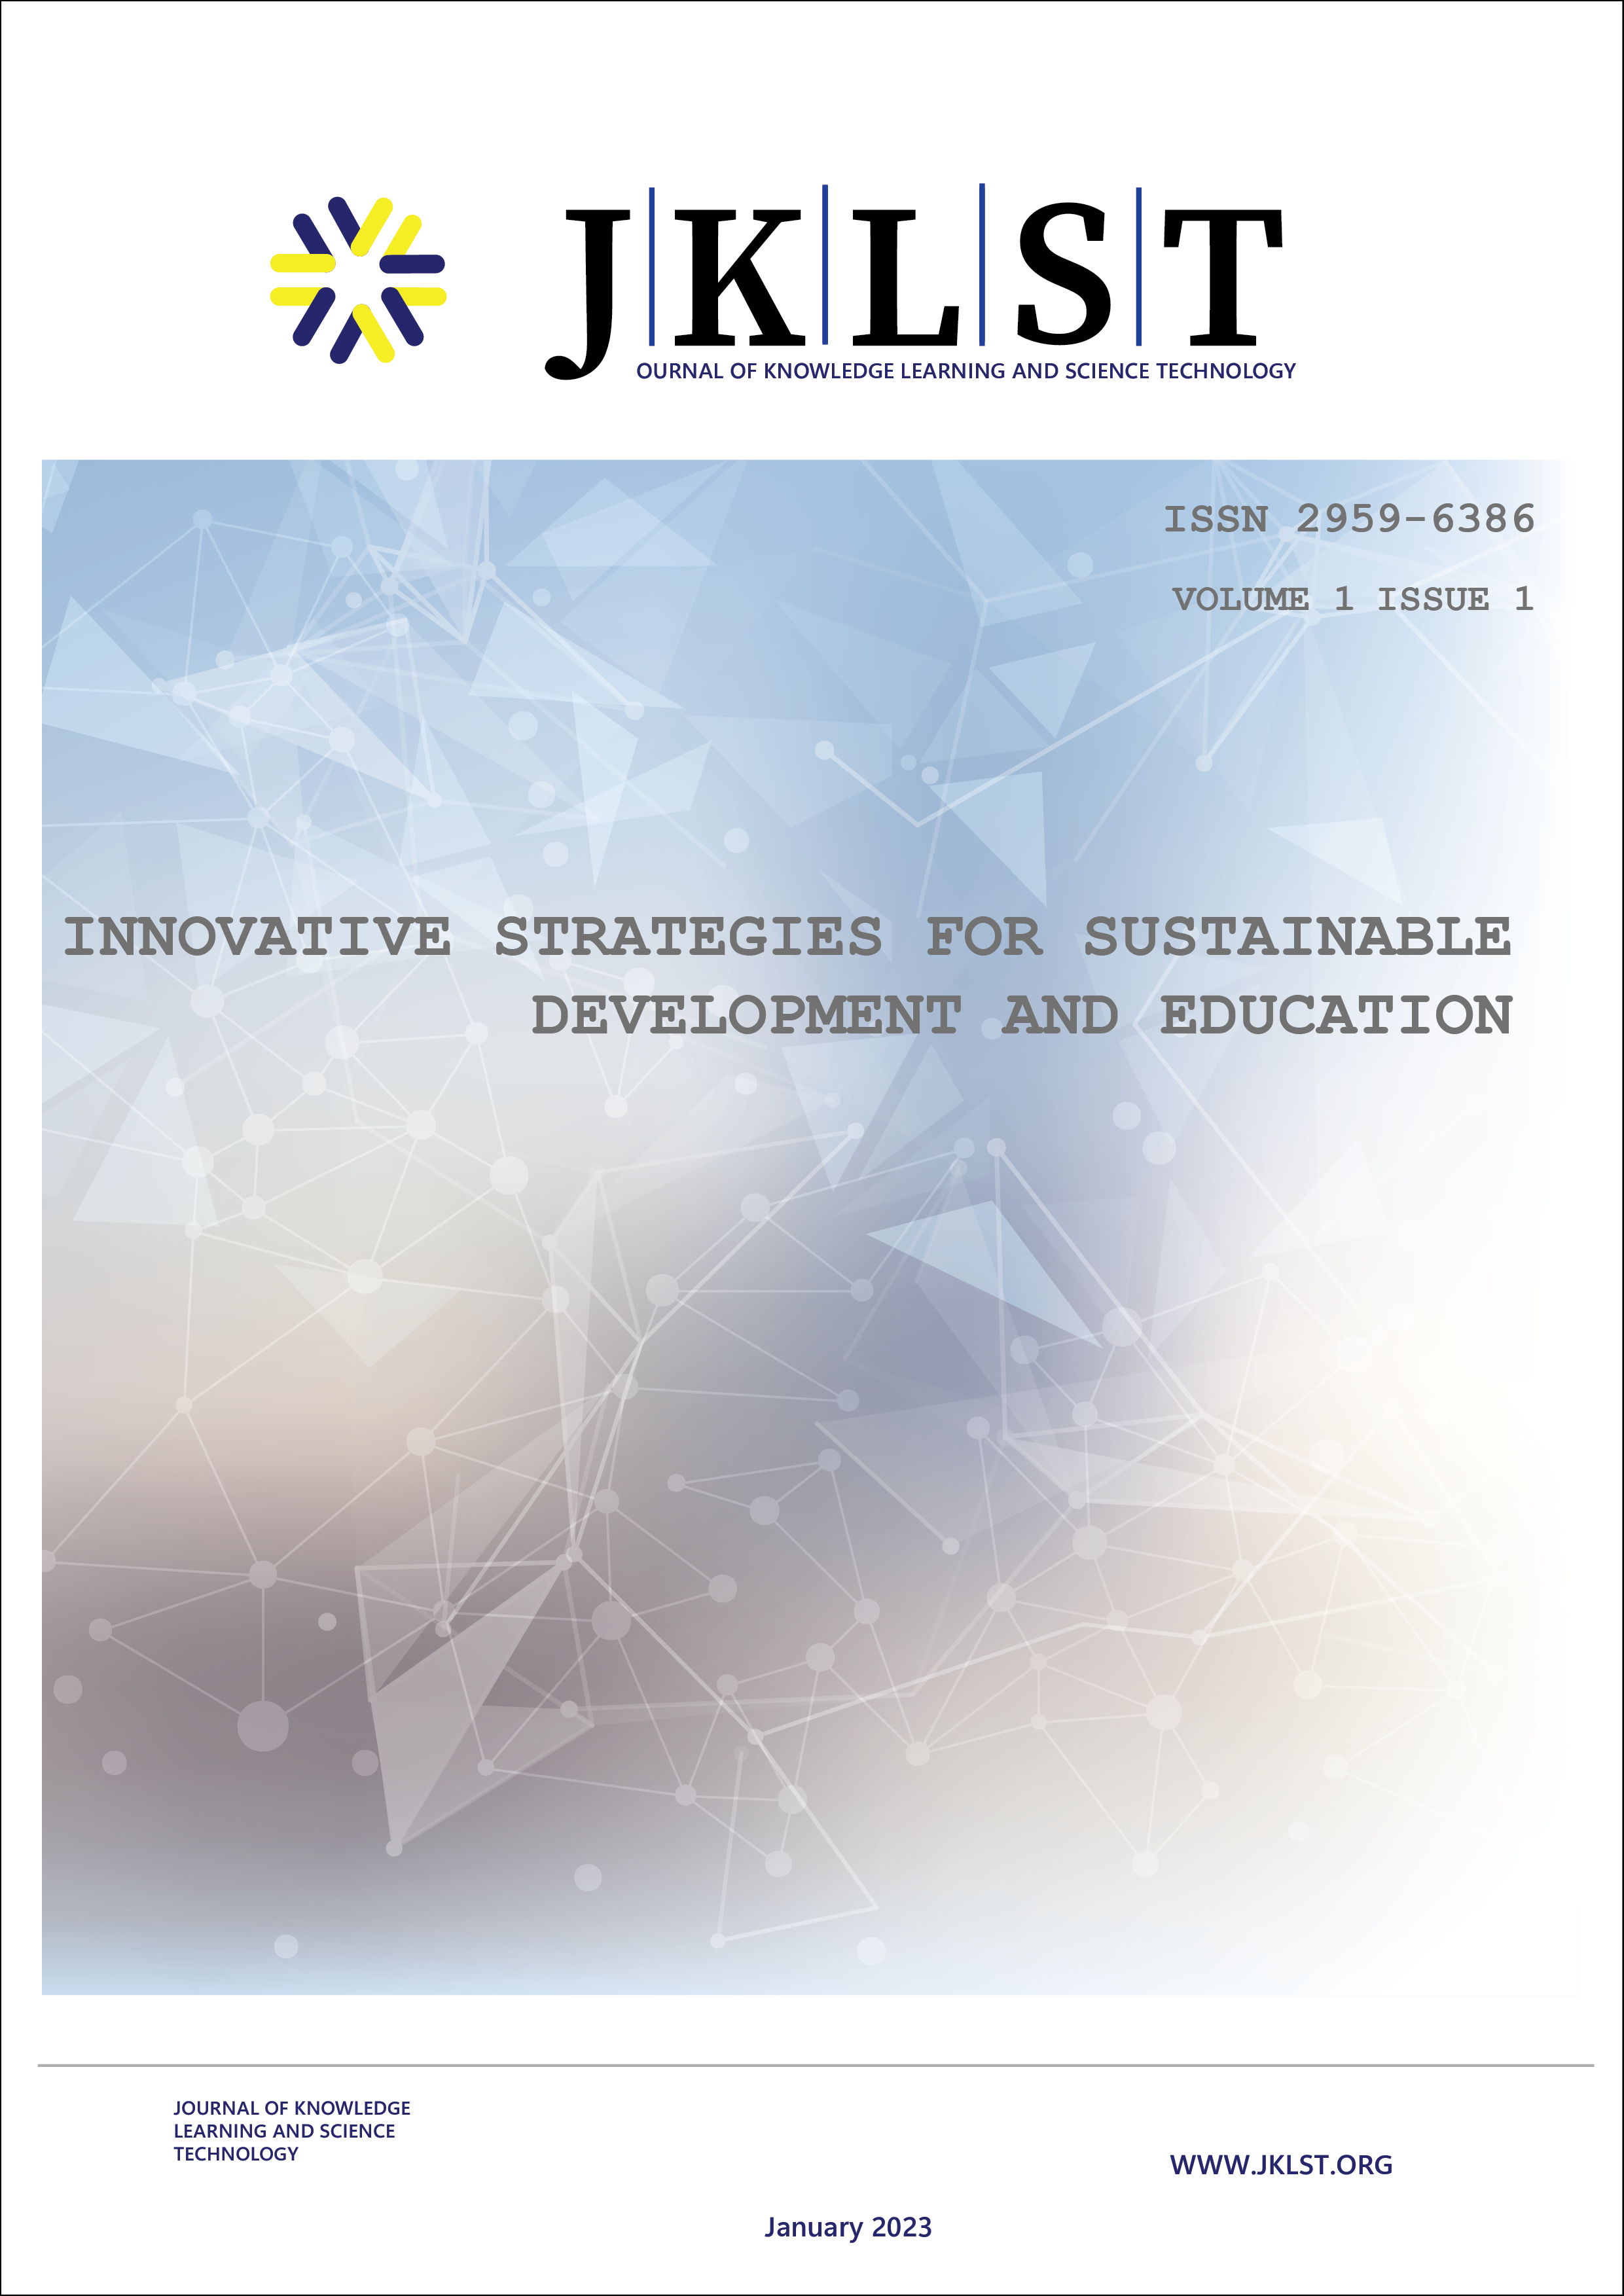 					查看 卷 1 期 1: Innovative Strategies for Sustainable Development and Education
				